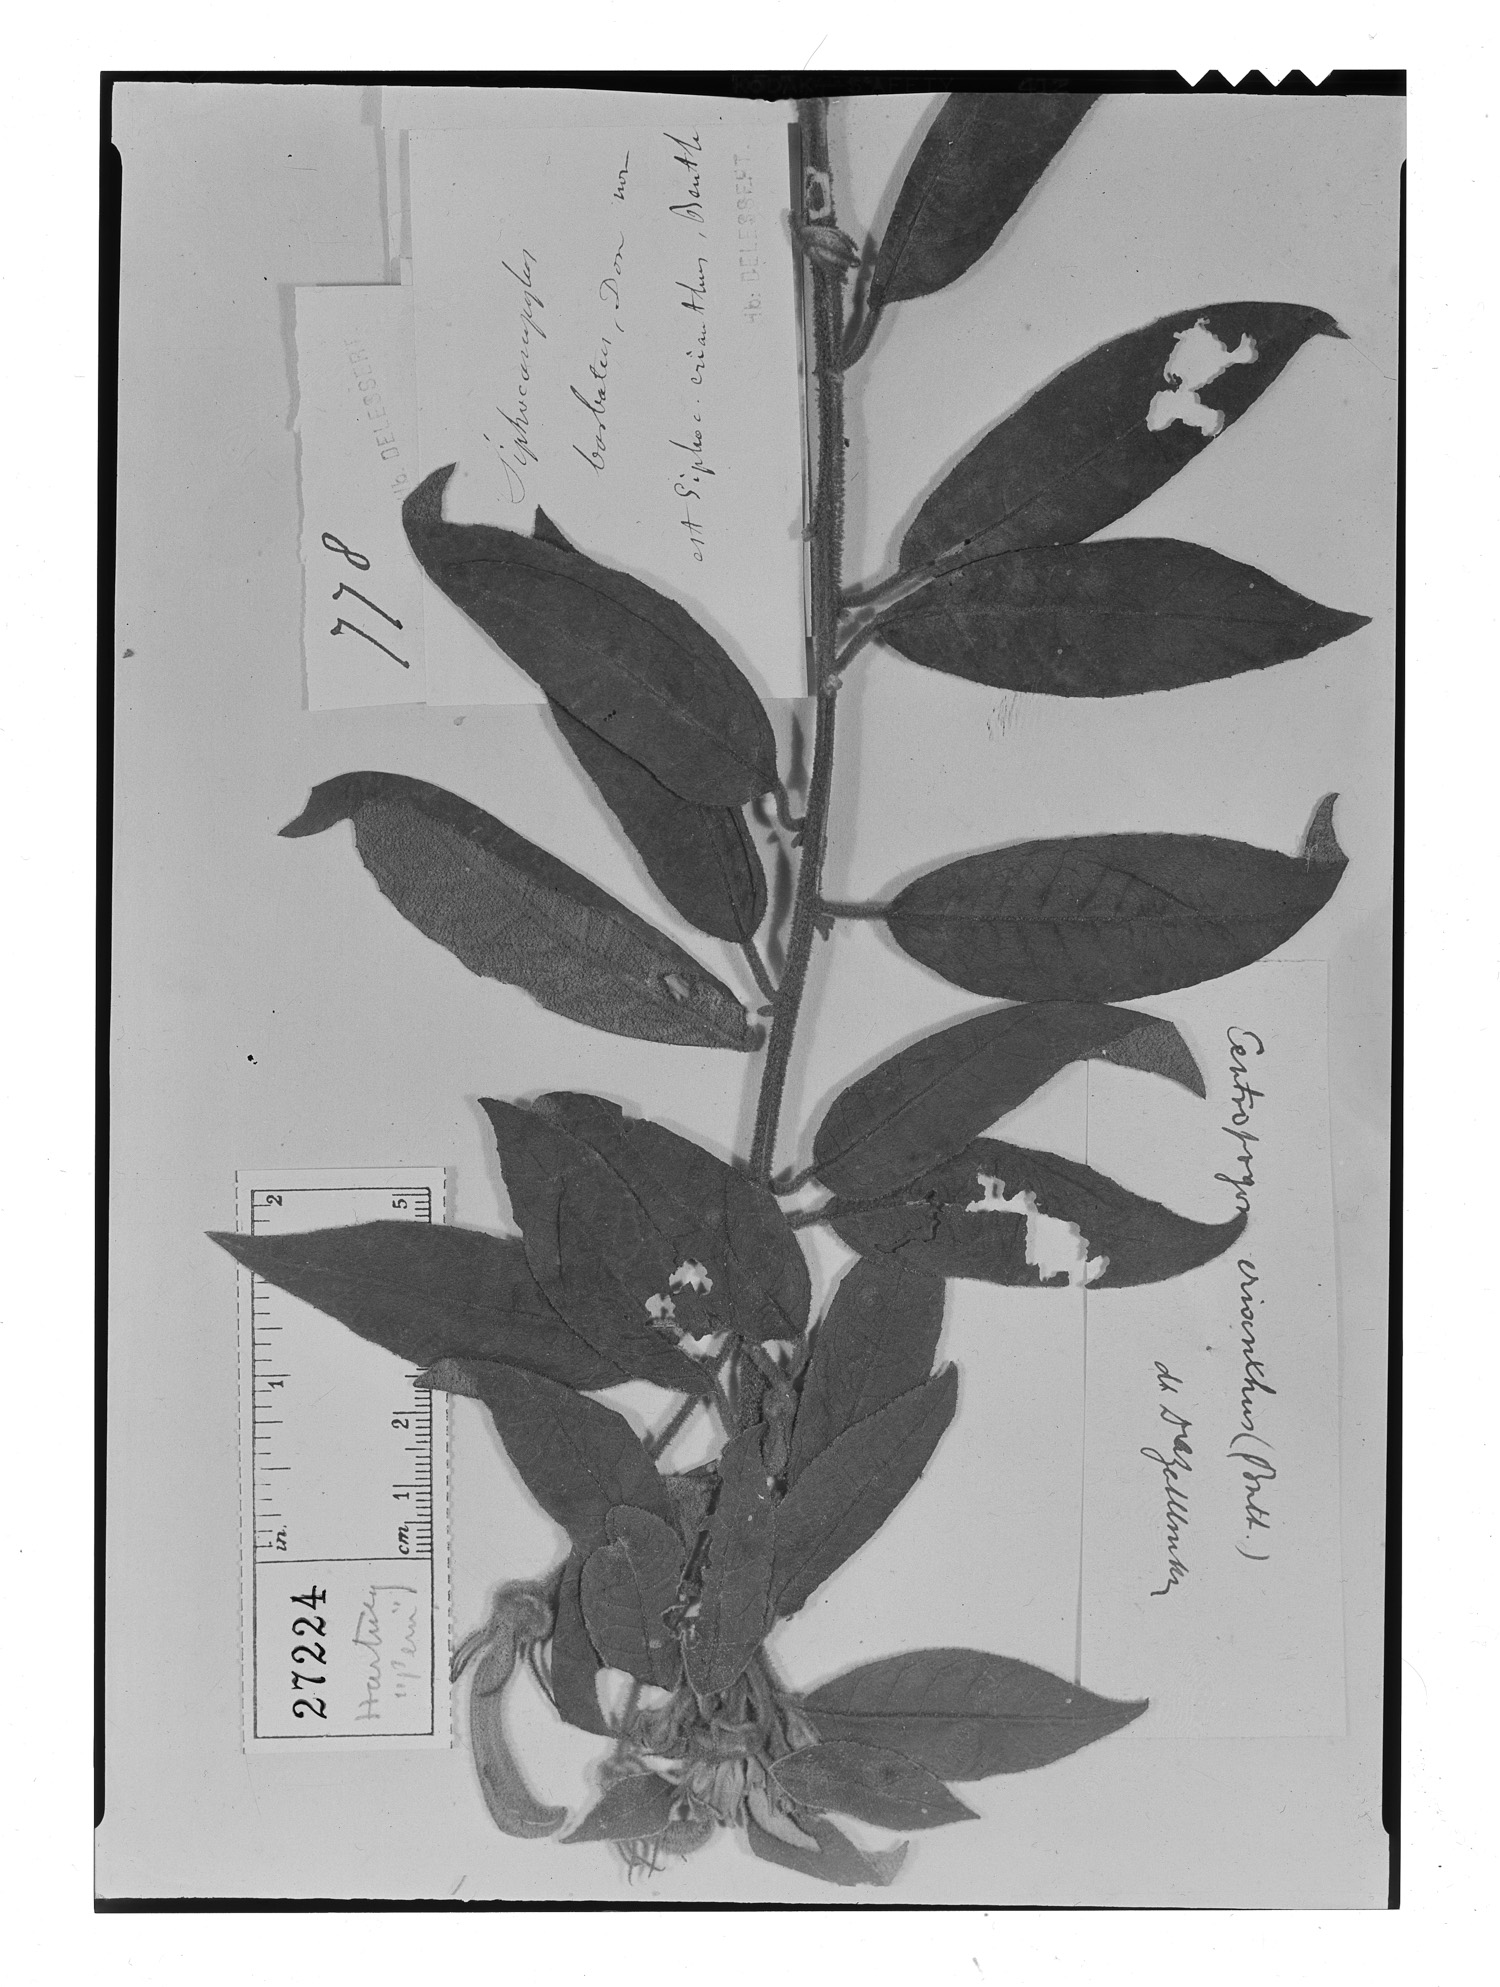 Centropogon erianthus image